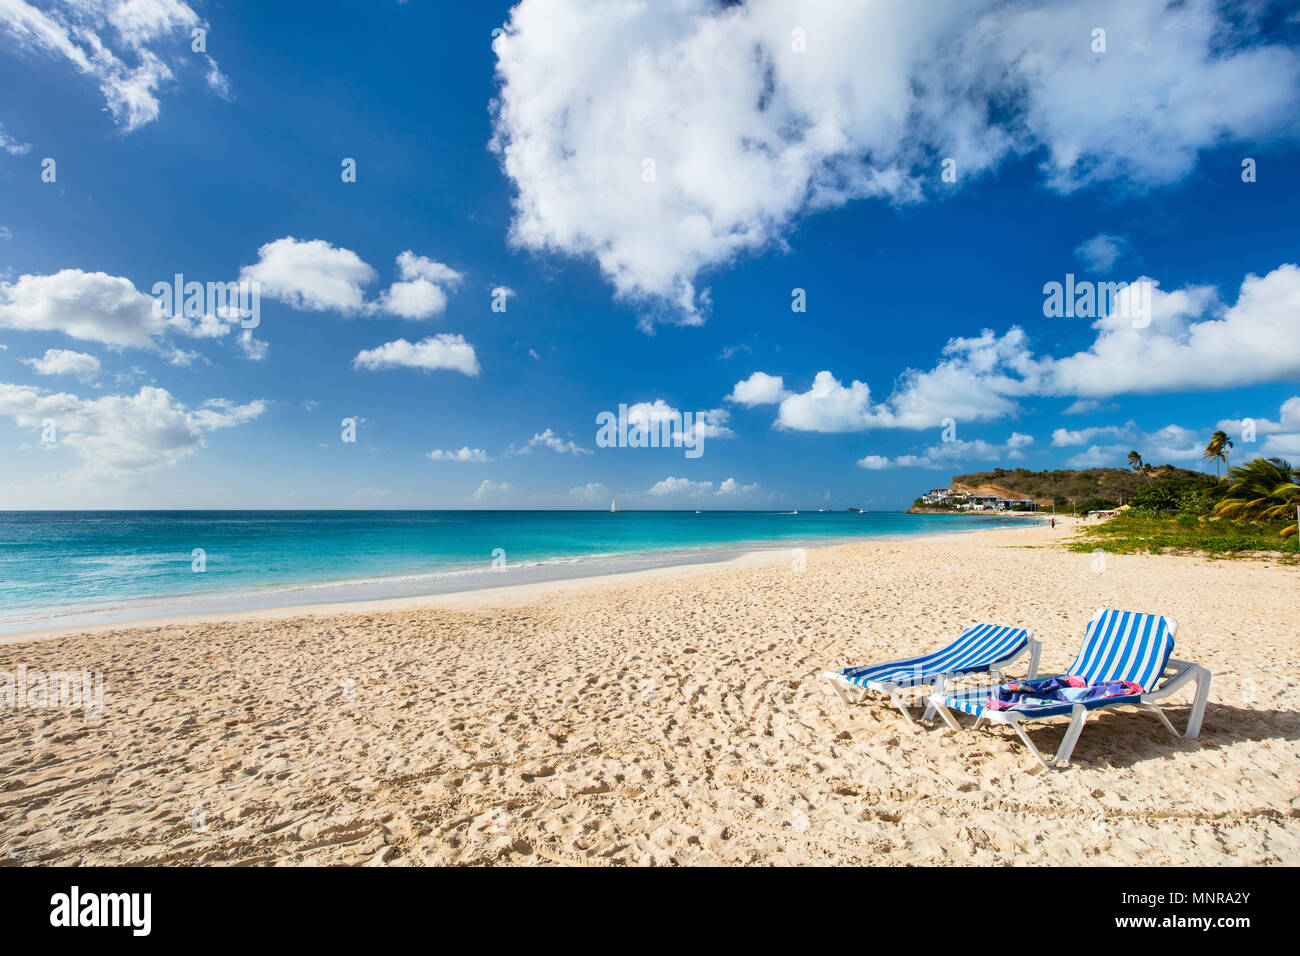 Plage de Darkwood tropical idyllique à l'île d'Antigua dans les Caraïbes avec le sable blanc, l'eau de l'océan turquoise et ciel bleu Banque D'Images